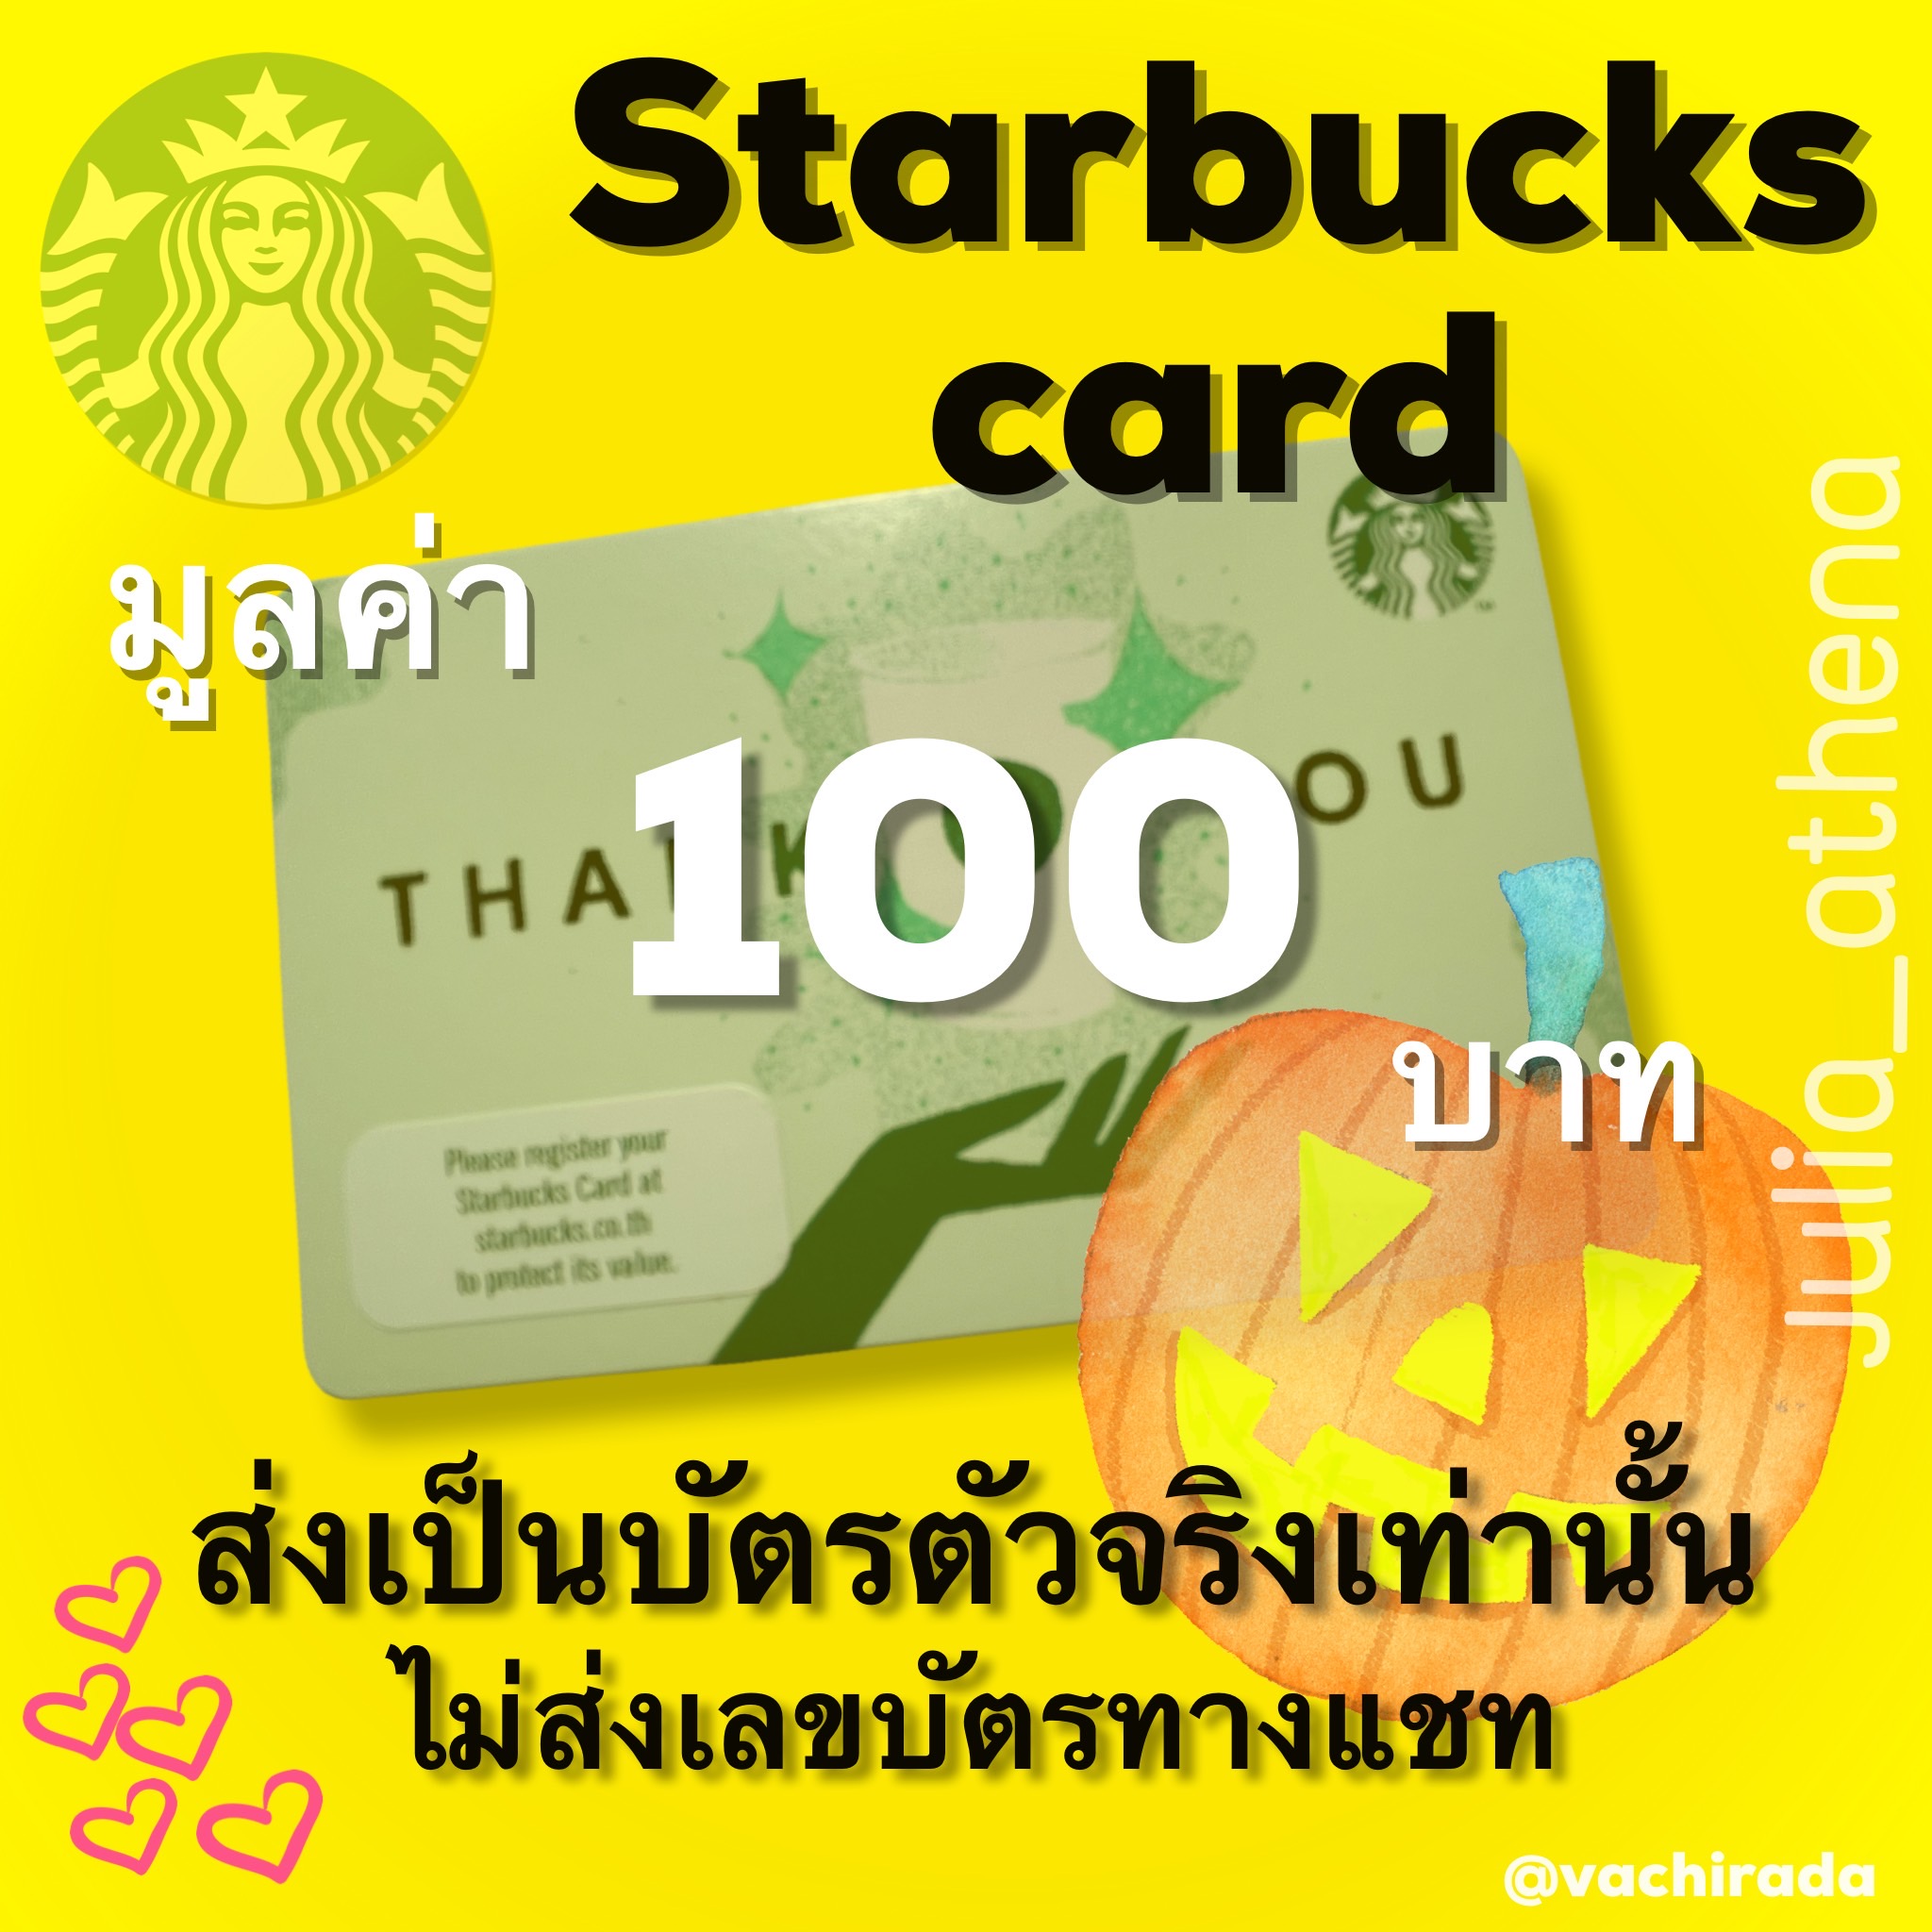 ภาพประกอบของ Starbucks card มูลค่า 100 บาทส่งบัตรจริงผ่านขนส่ง